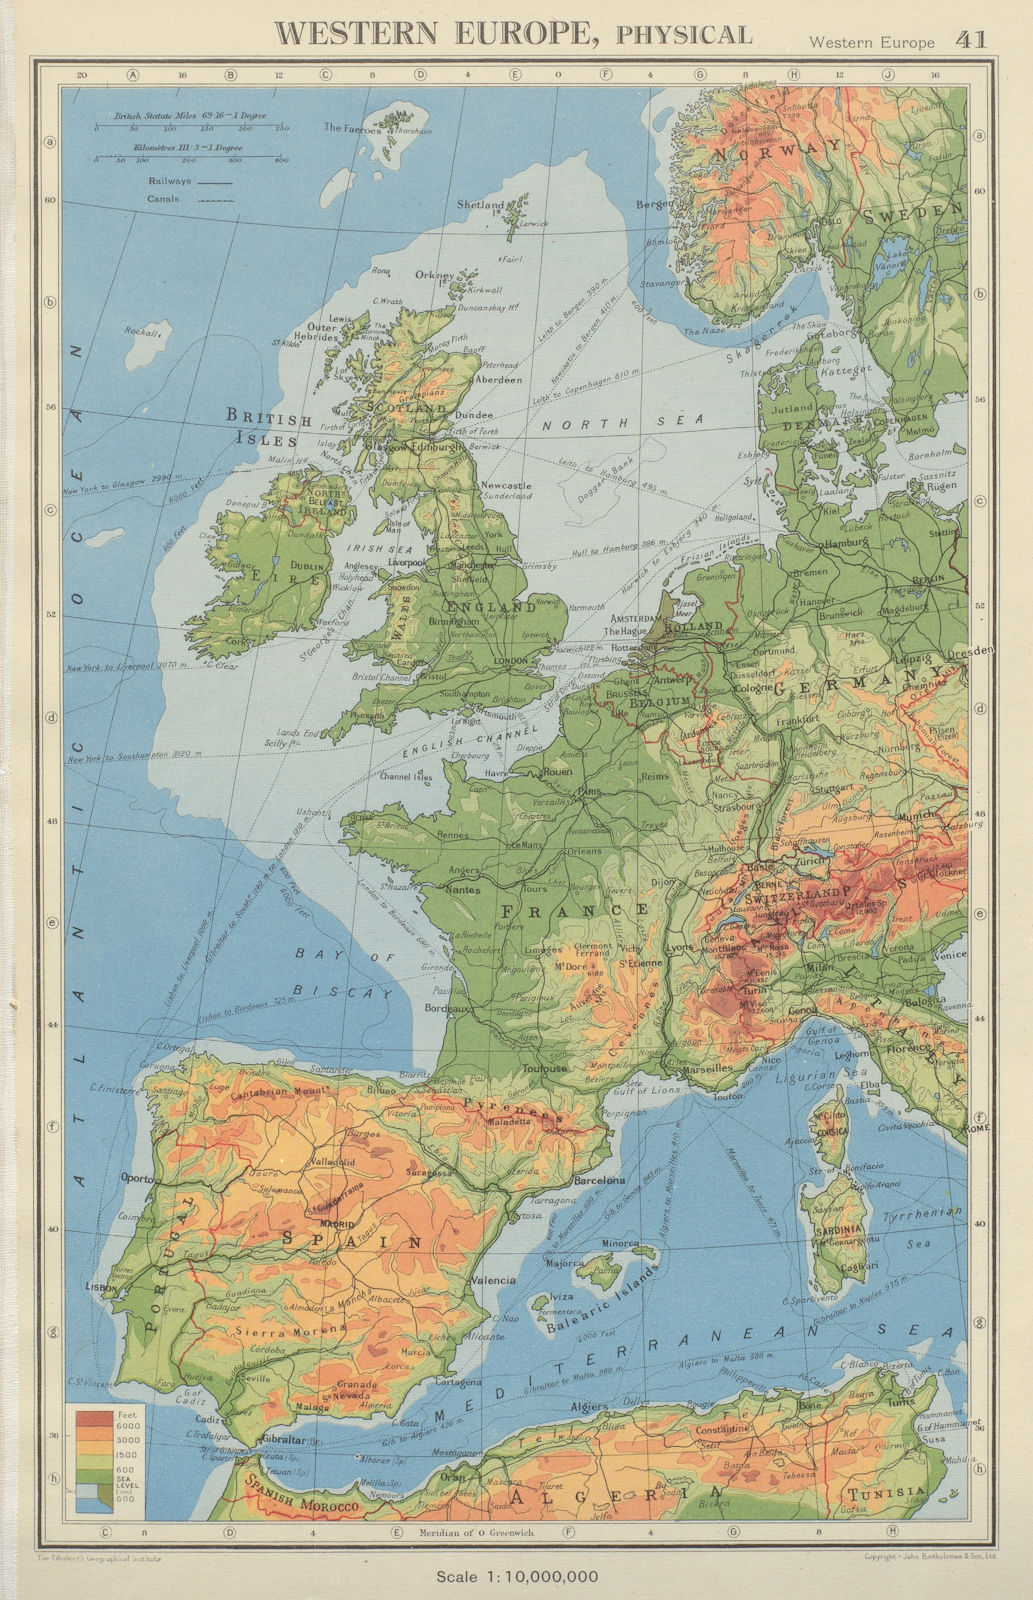 Associate Product WESTERN EUROPE. Physical & main railways. BARTHOLOMEW 1947 old vintage map